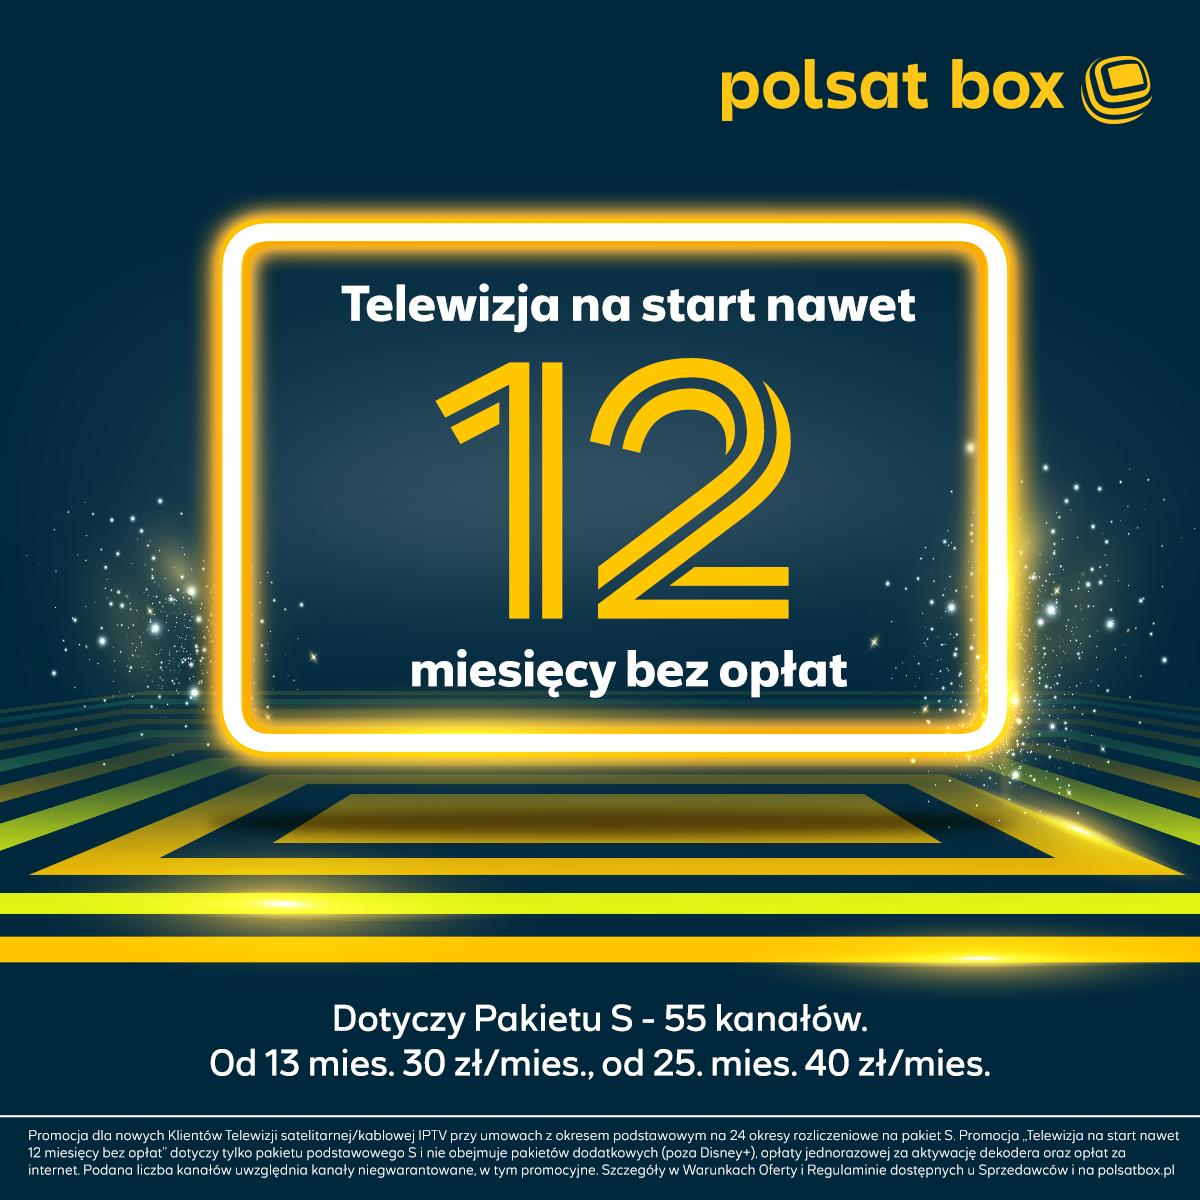 Superatrakcyjna promocja od Polsat Box – nawet 12 miesięcy TV bez opłat na start